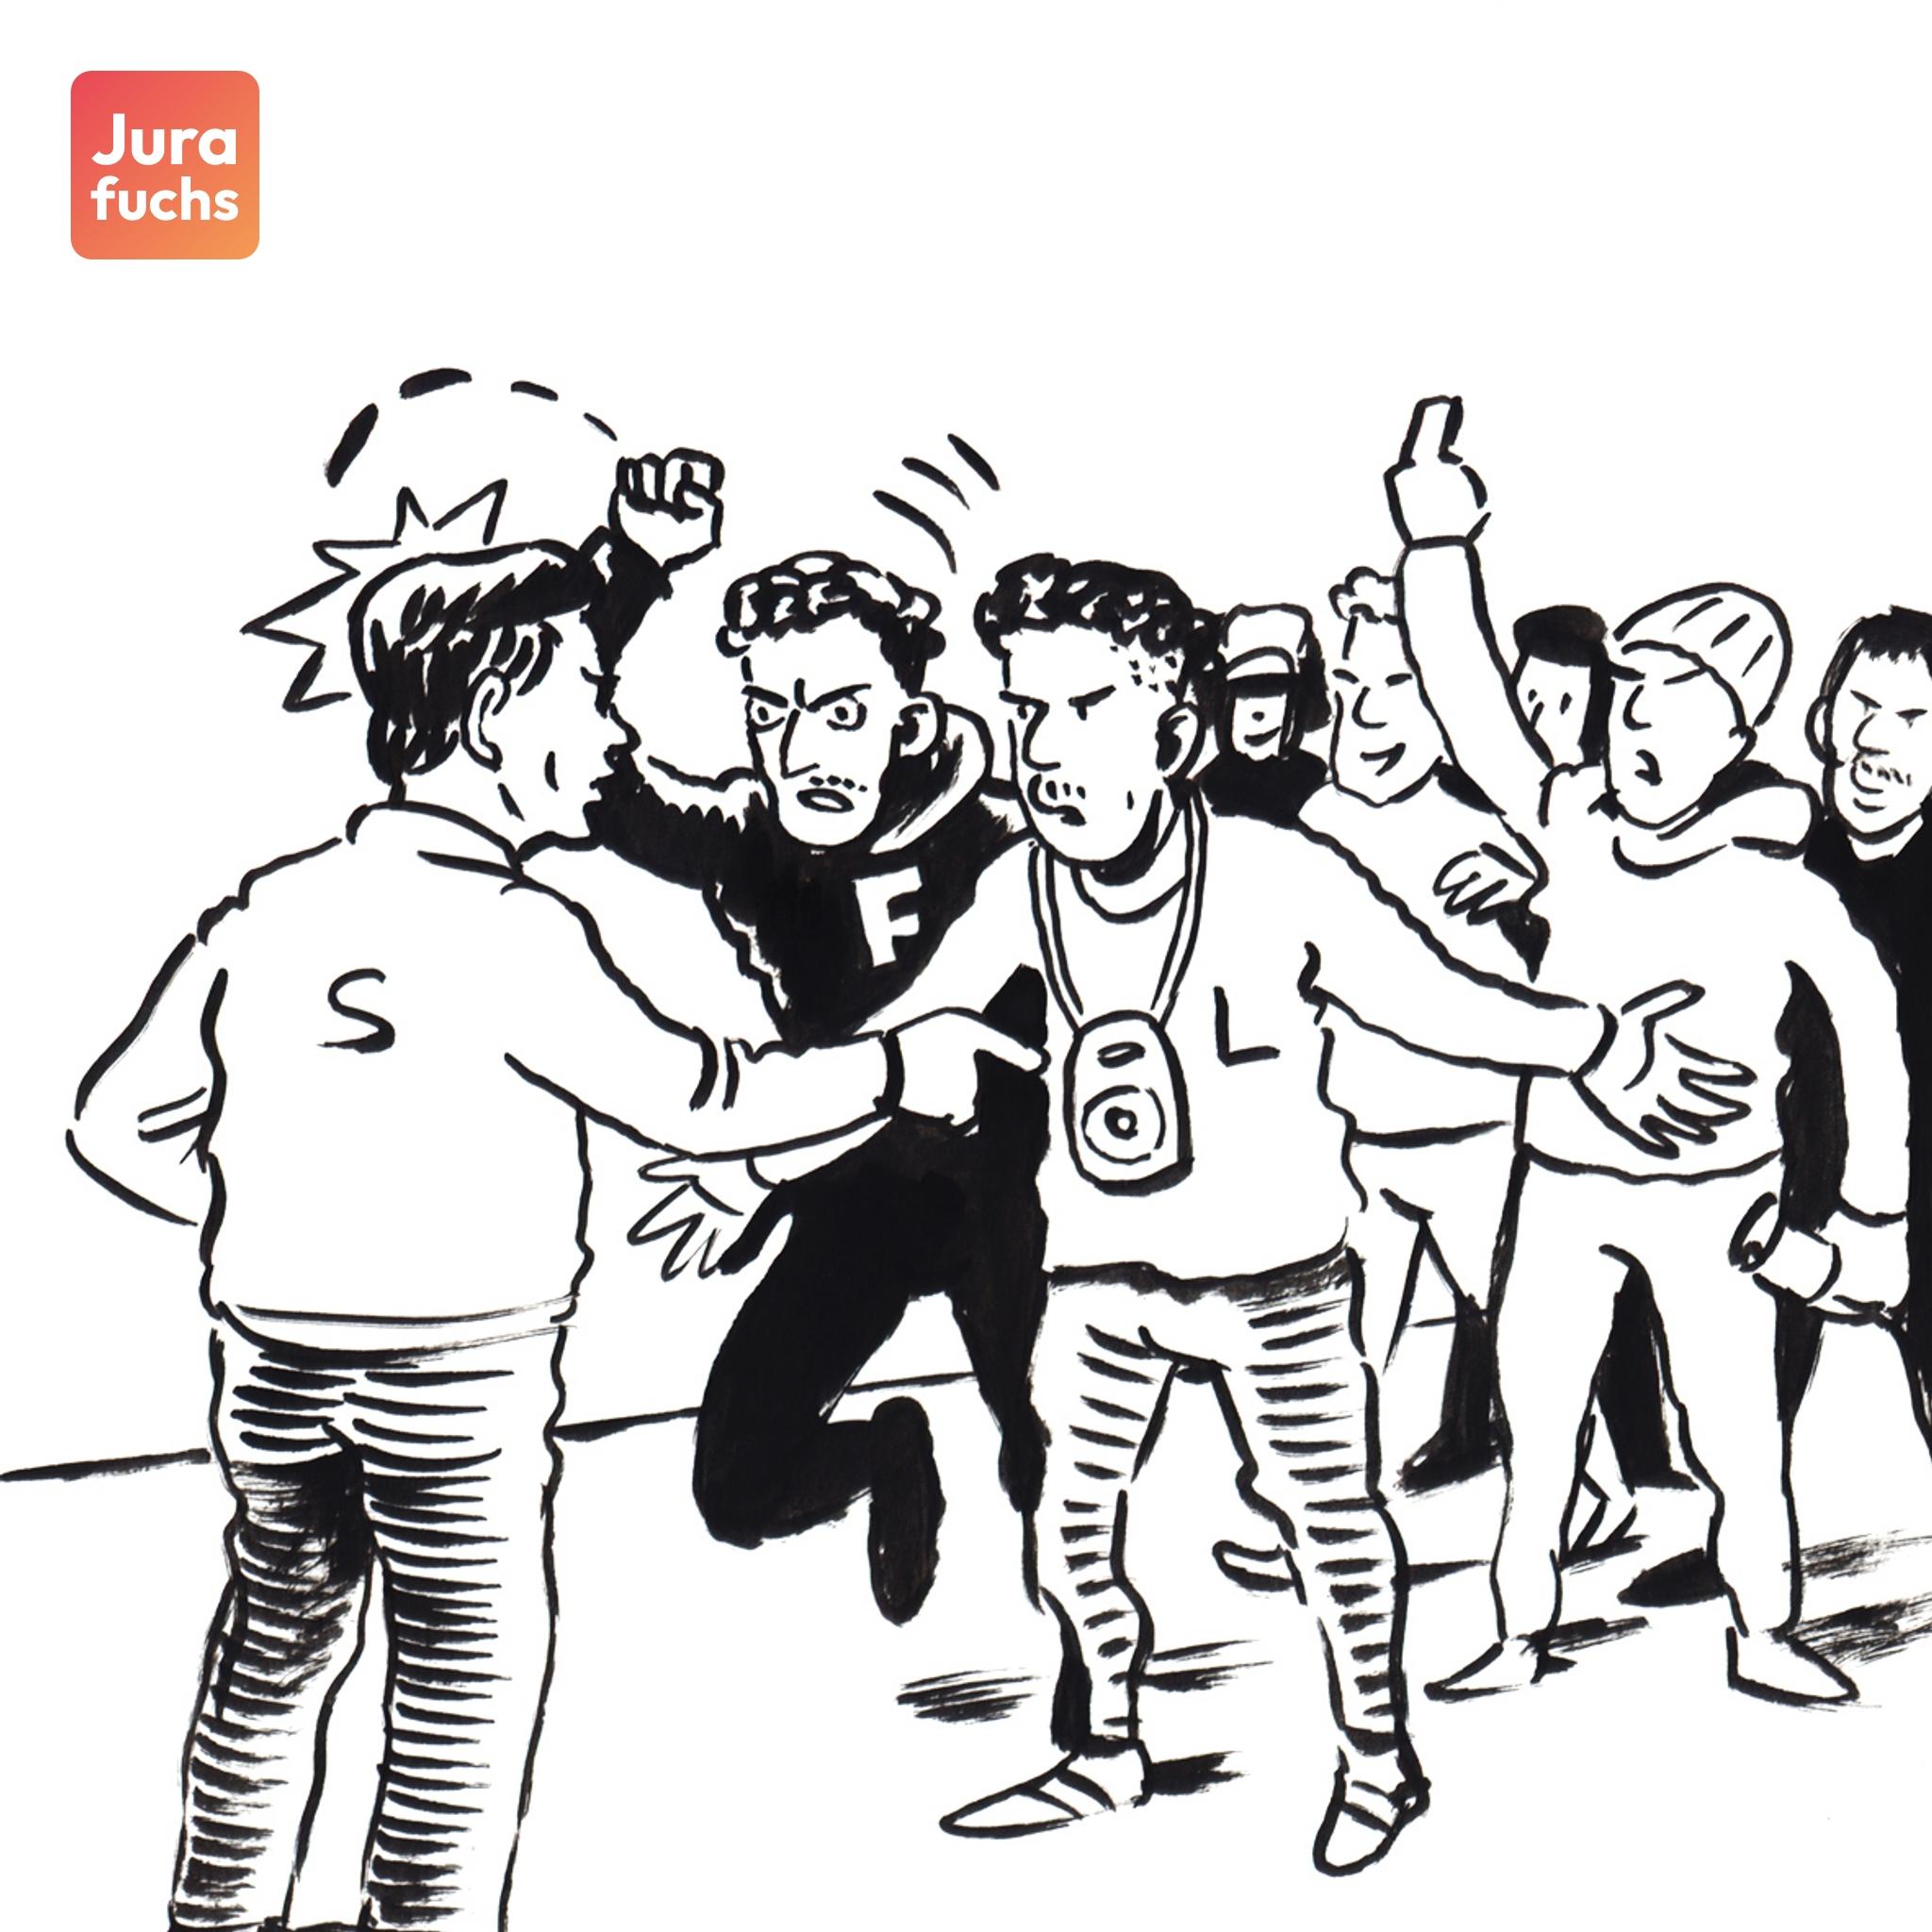 Jurafuchs Illustration: Eine Gruppe von jungen Erwachsenen stehen aggressiv dem S gegenüber. 